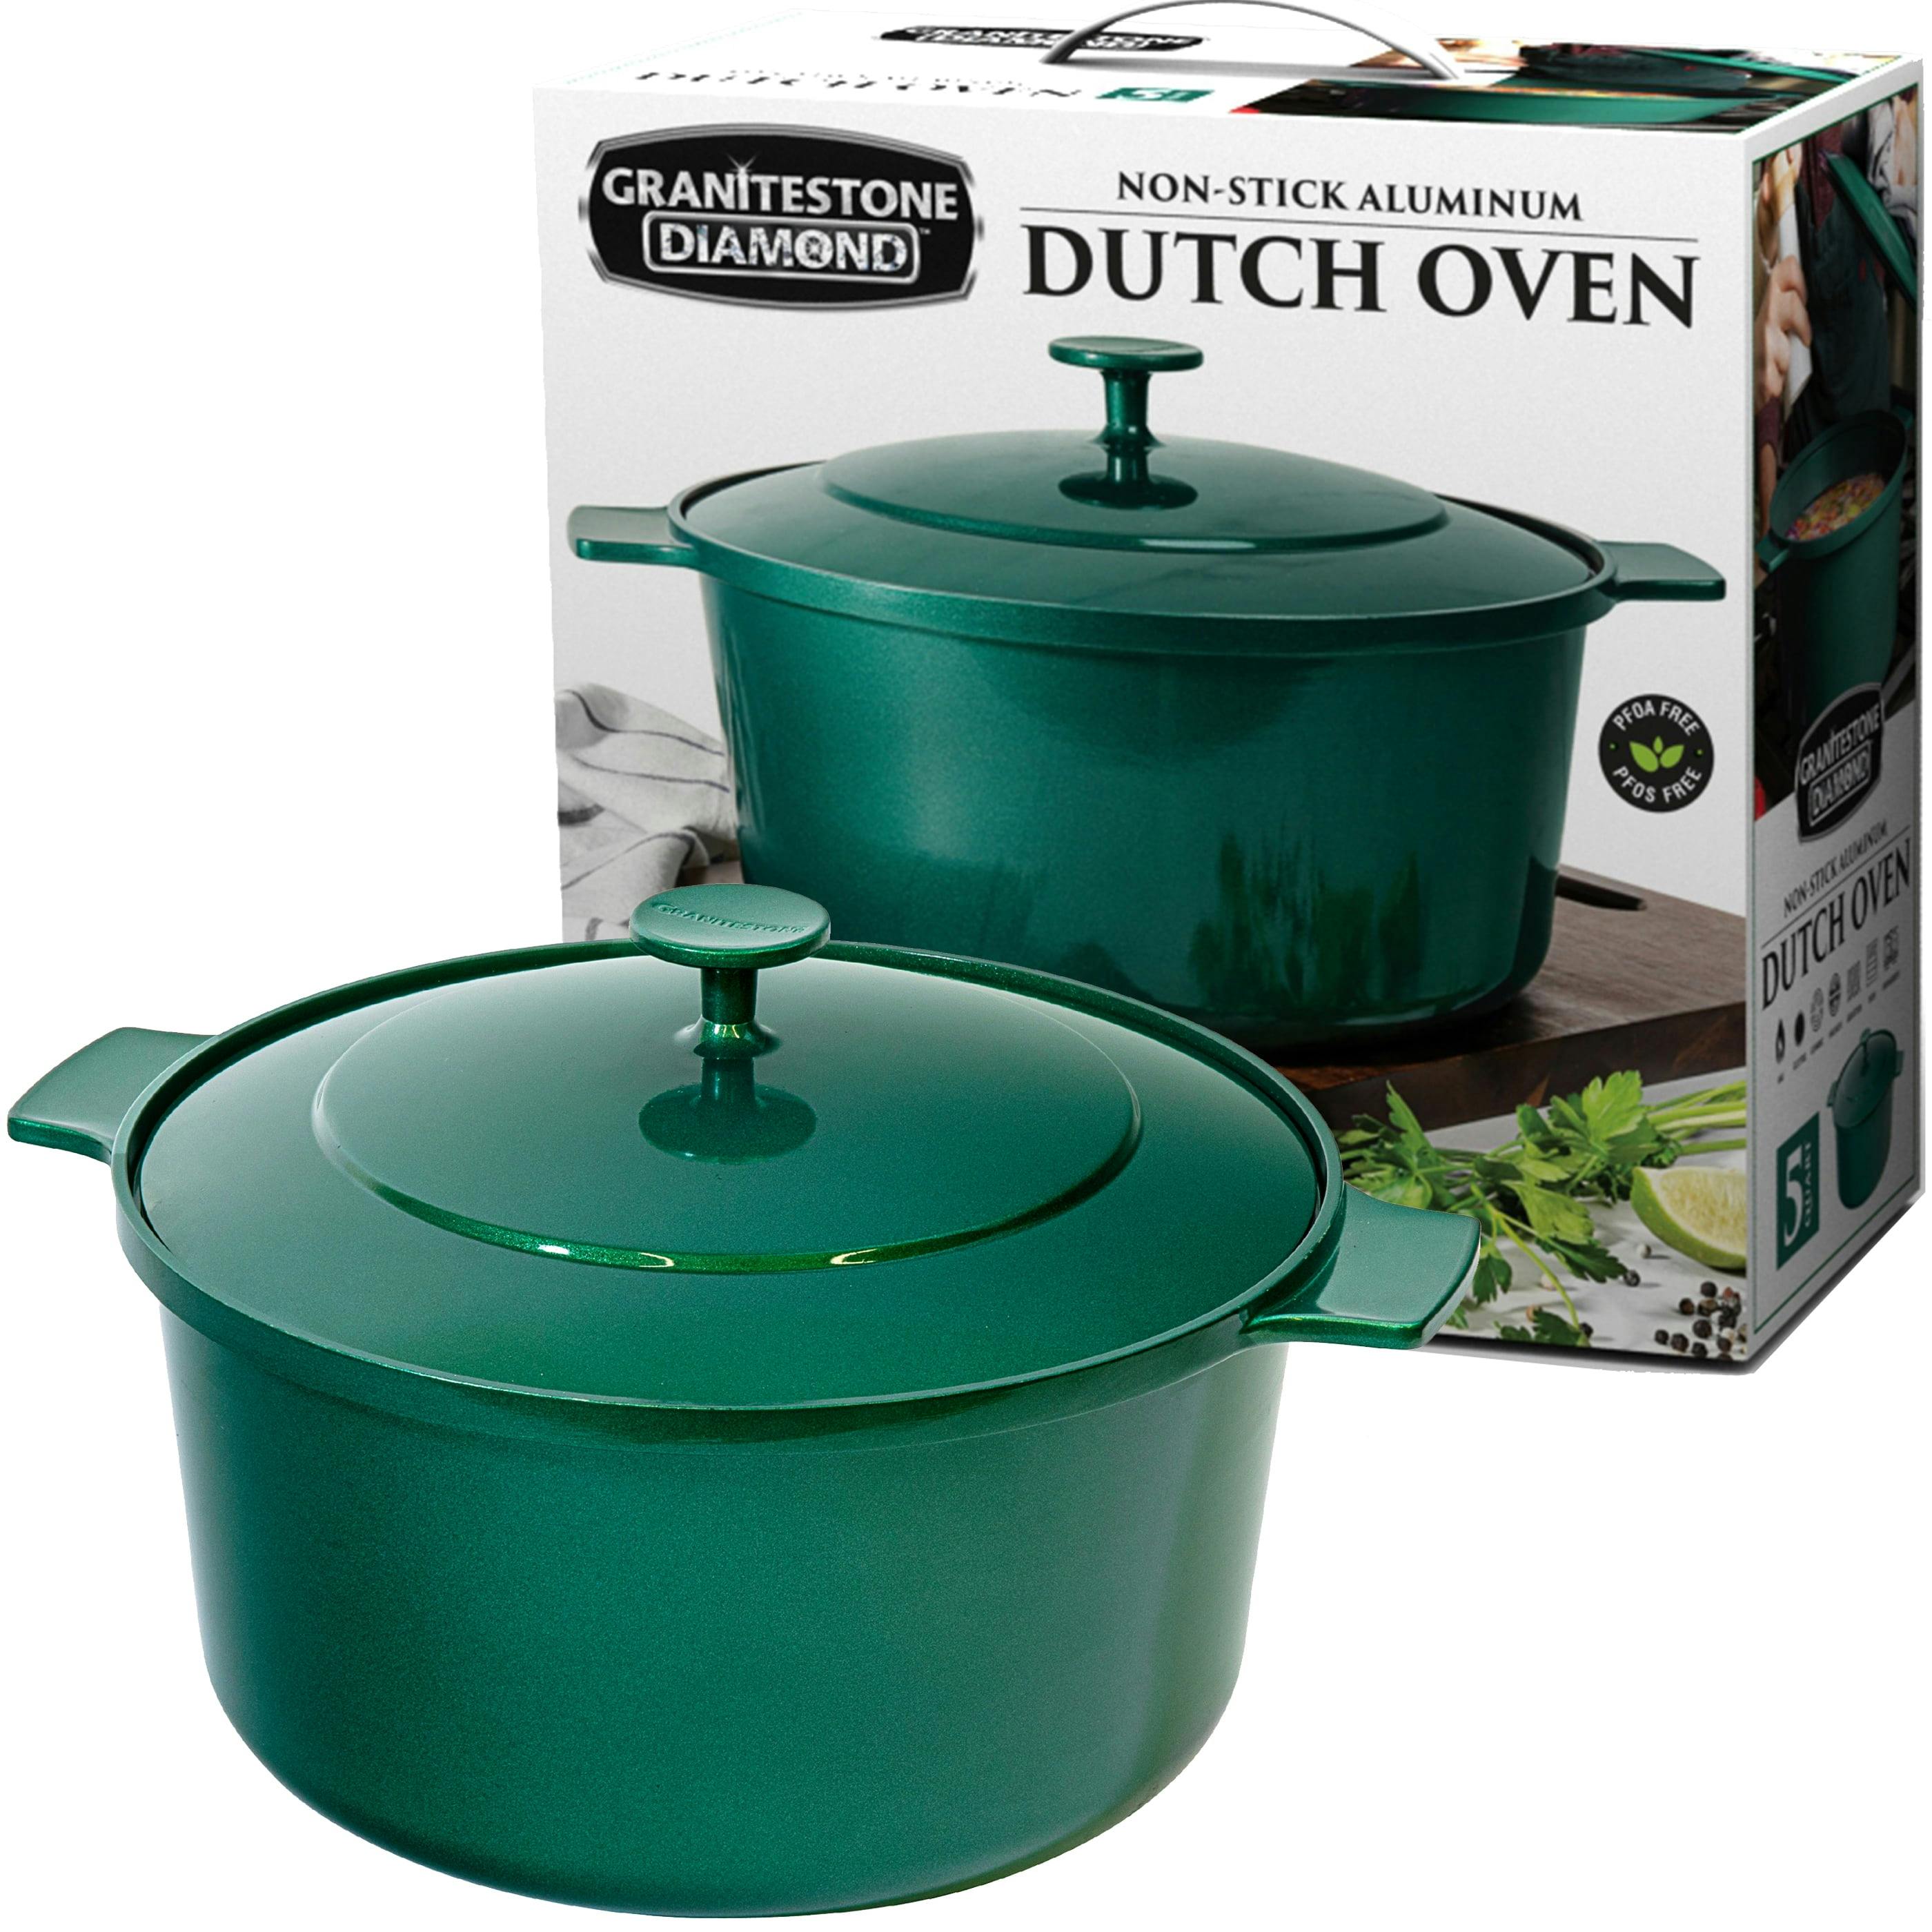 Emerald Green 5 Quart Lightweight Aluminum Dutch Oven with Lid